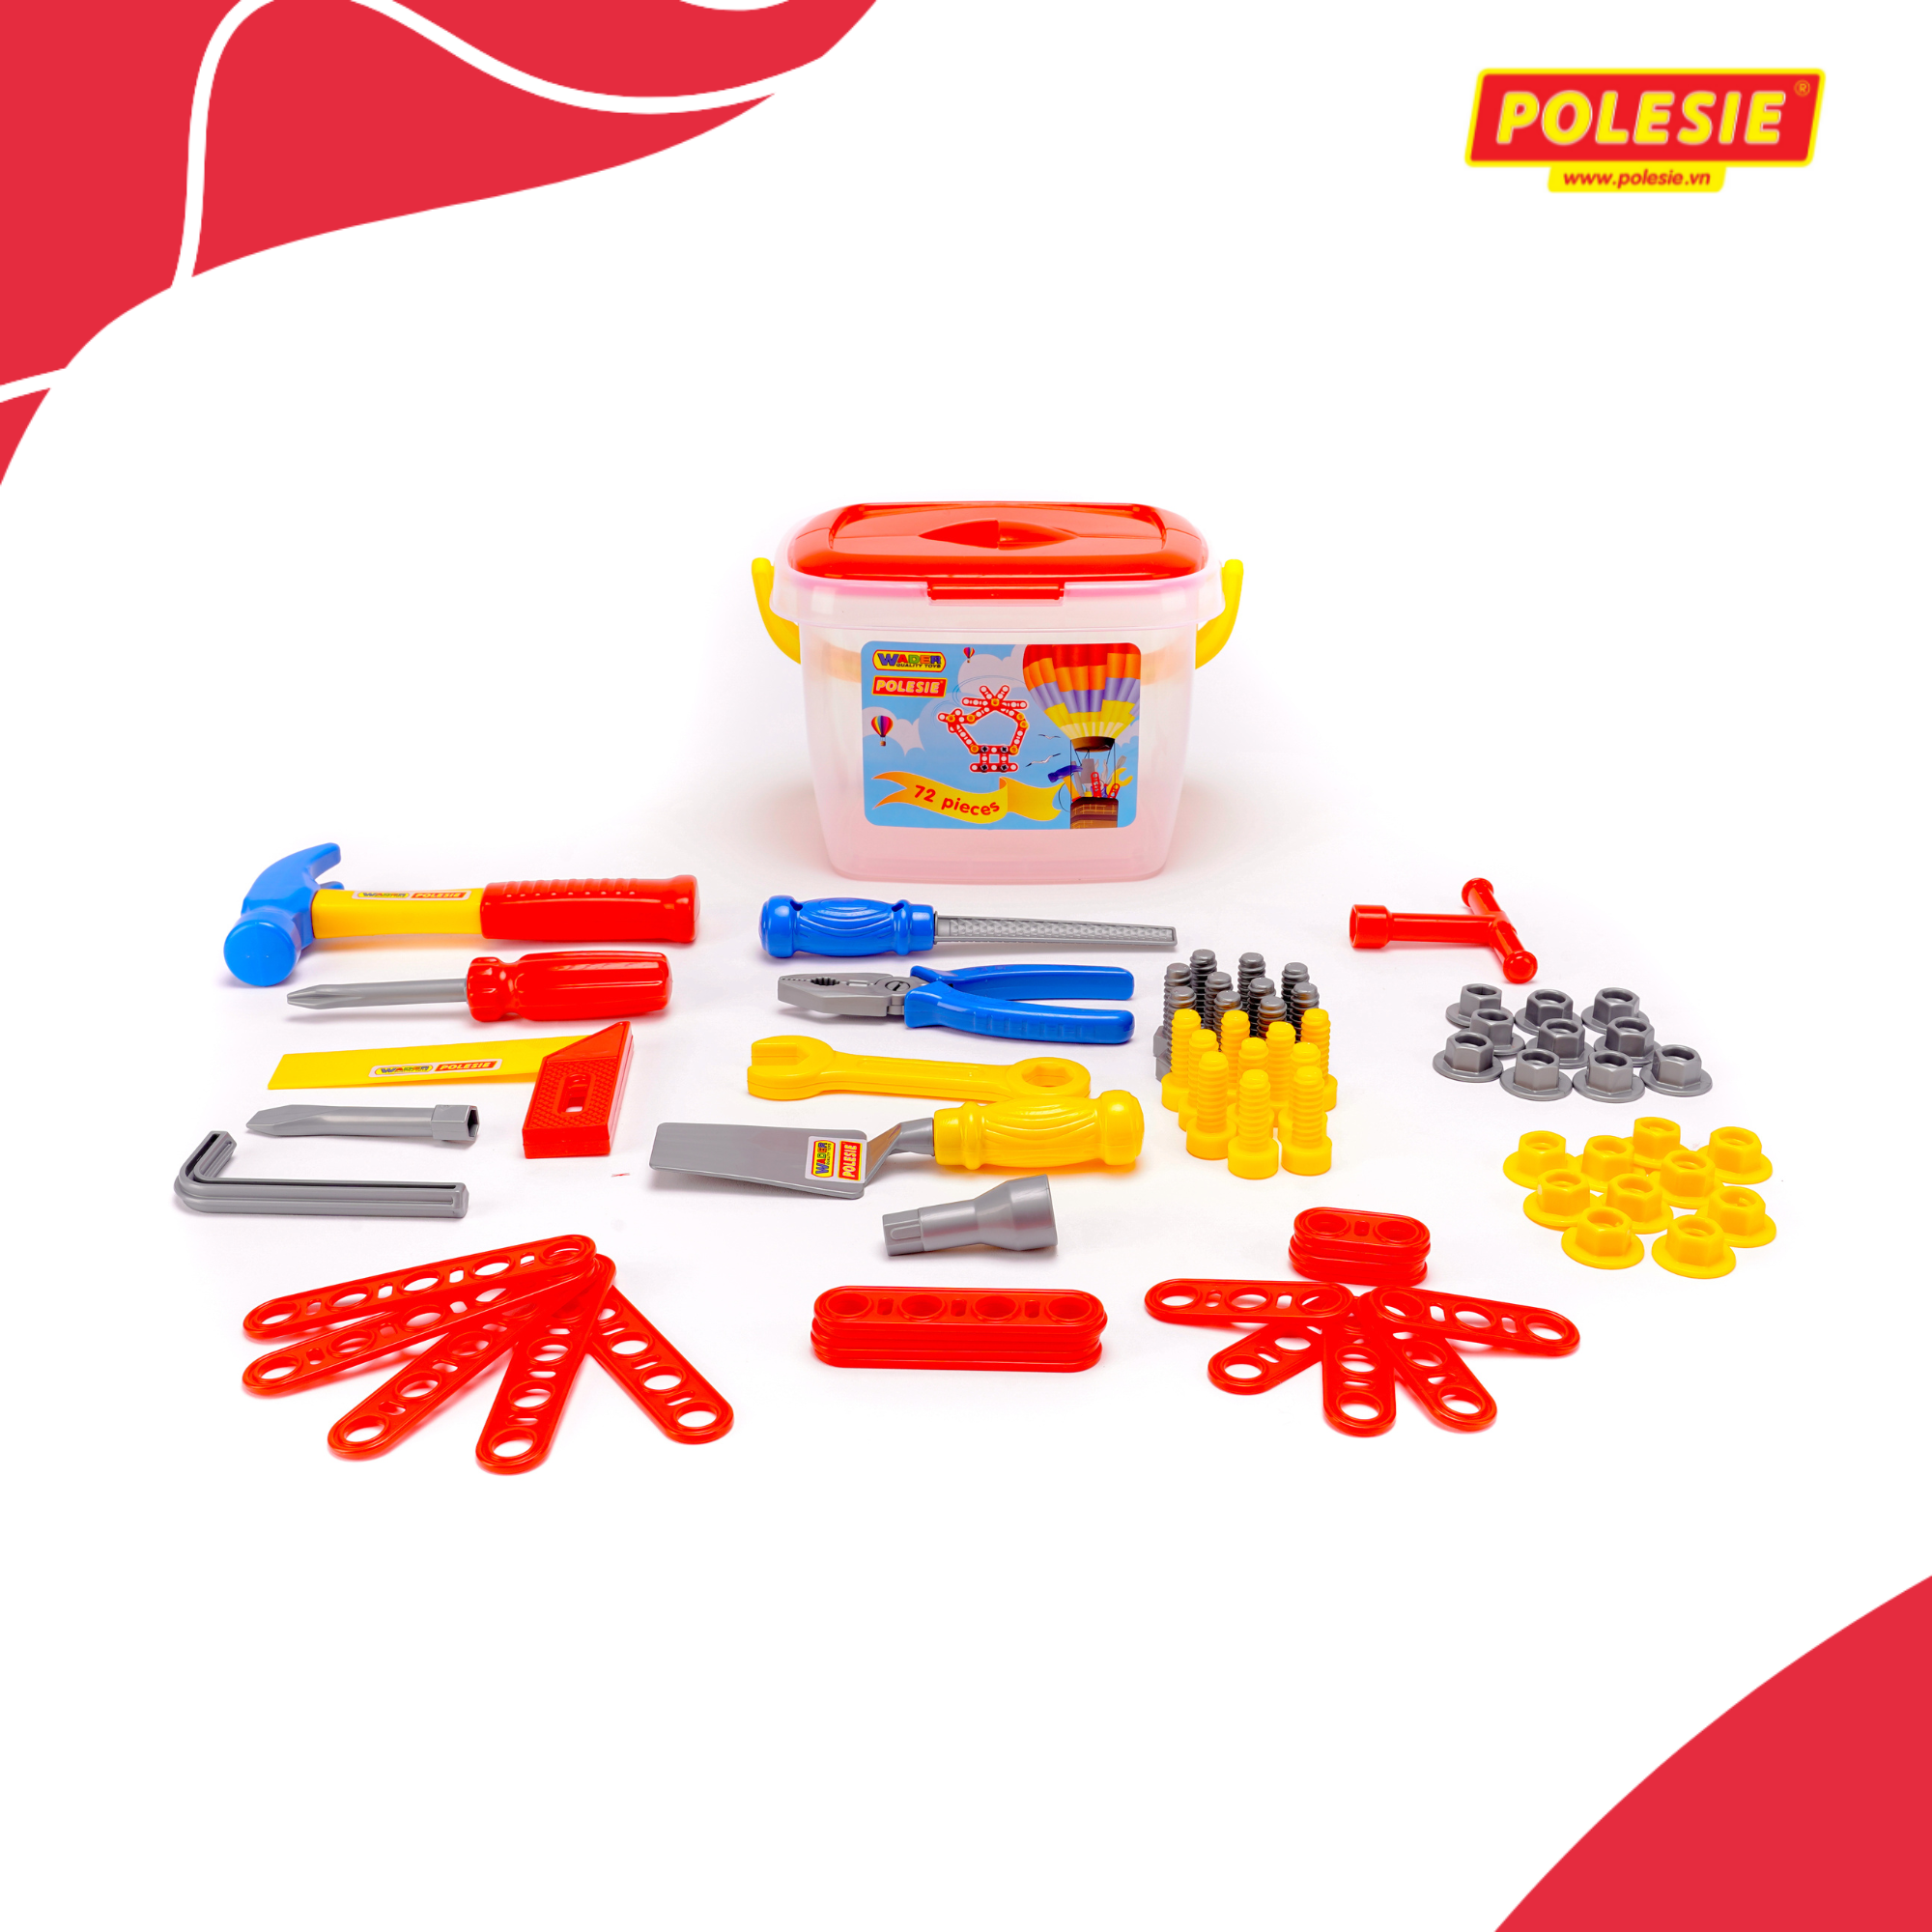 Hình ảnh Hộp đồ chơi dụng cụ kỹ thuật 72 chi tiết - Polesie Toys